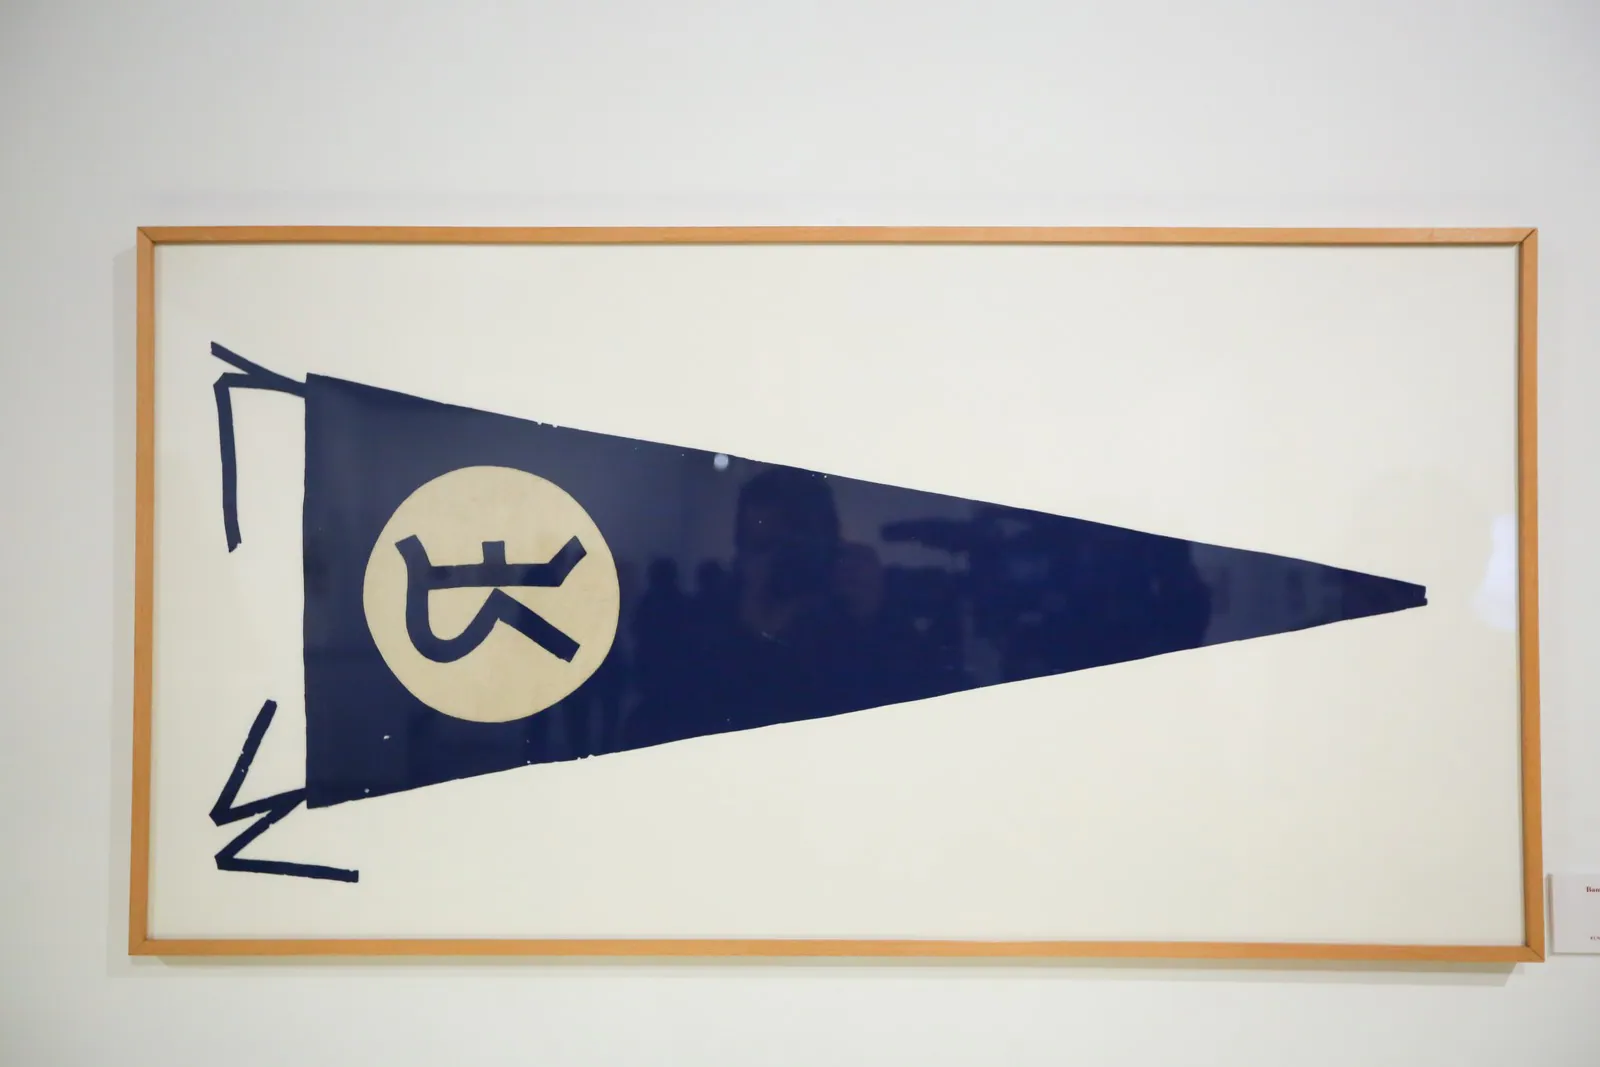 Banderín representativo de la Residencia de Estudiantes. Fundación Lorca.